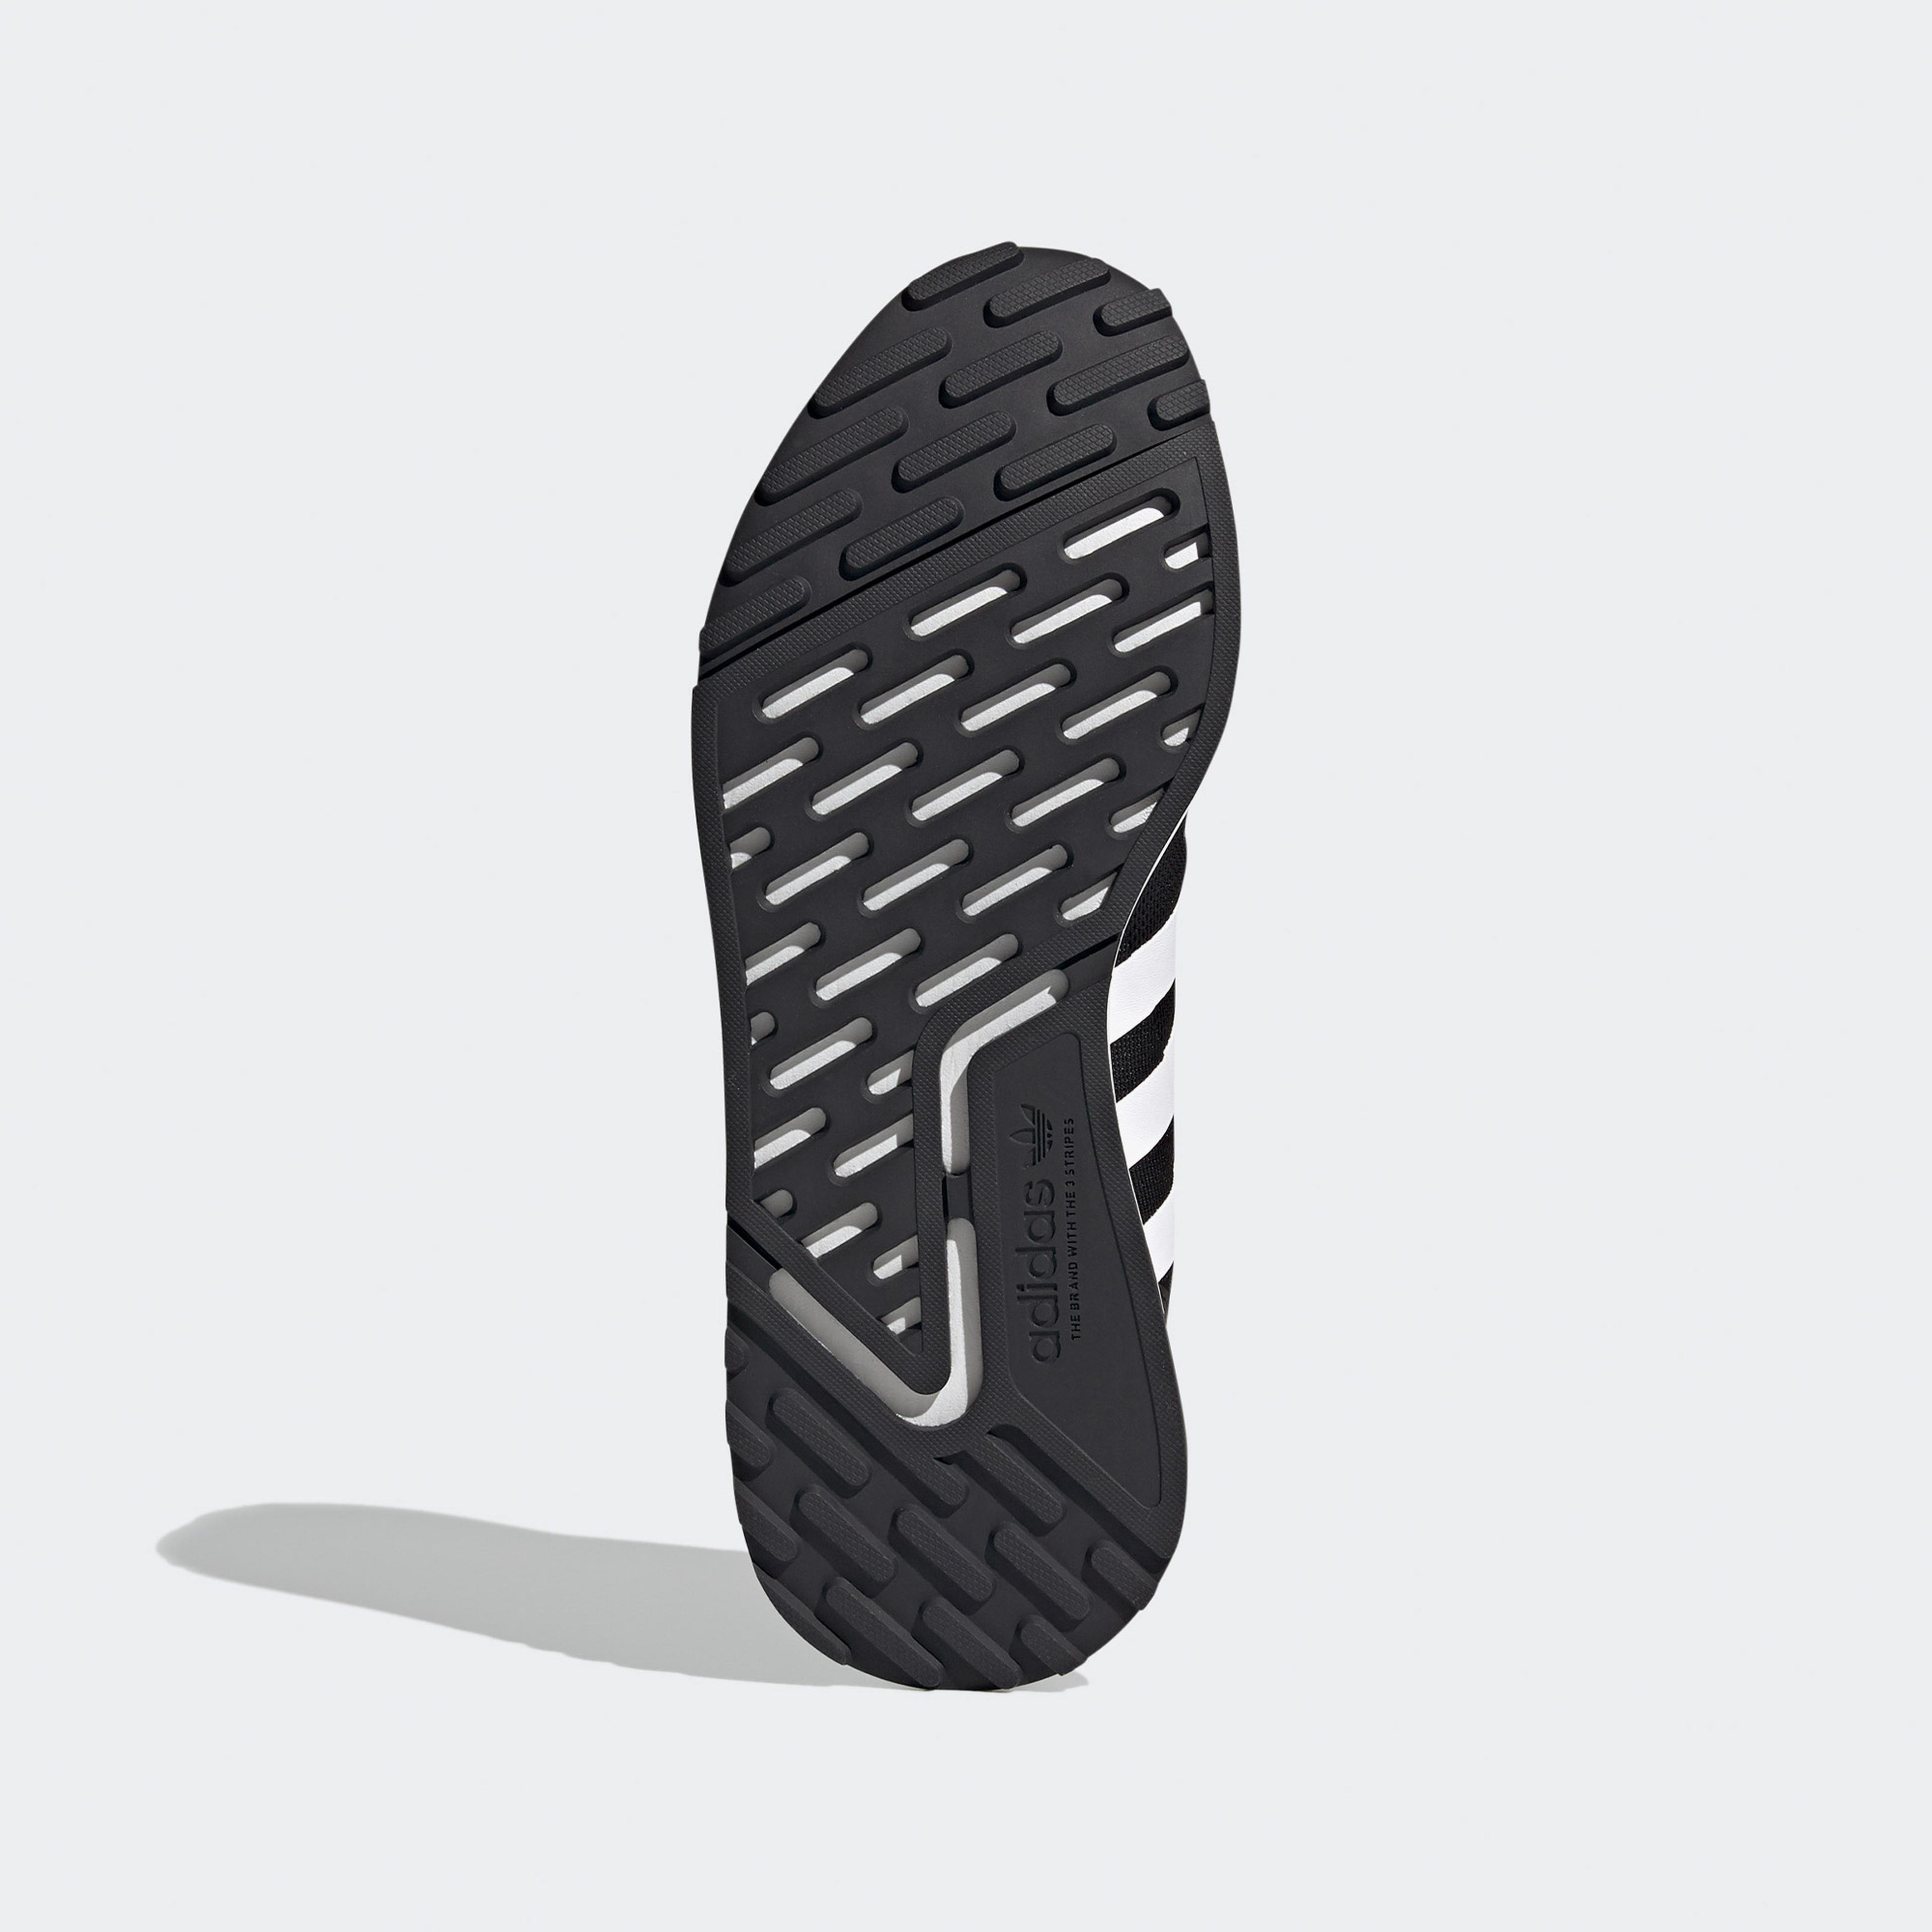 adidas Multix Unisex Siyah Spor Ayakkabı